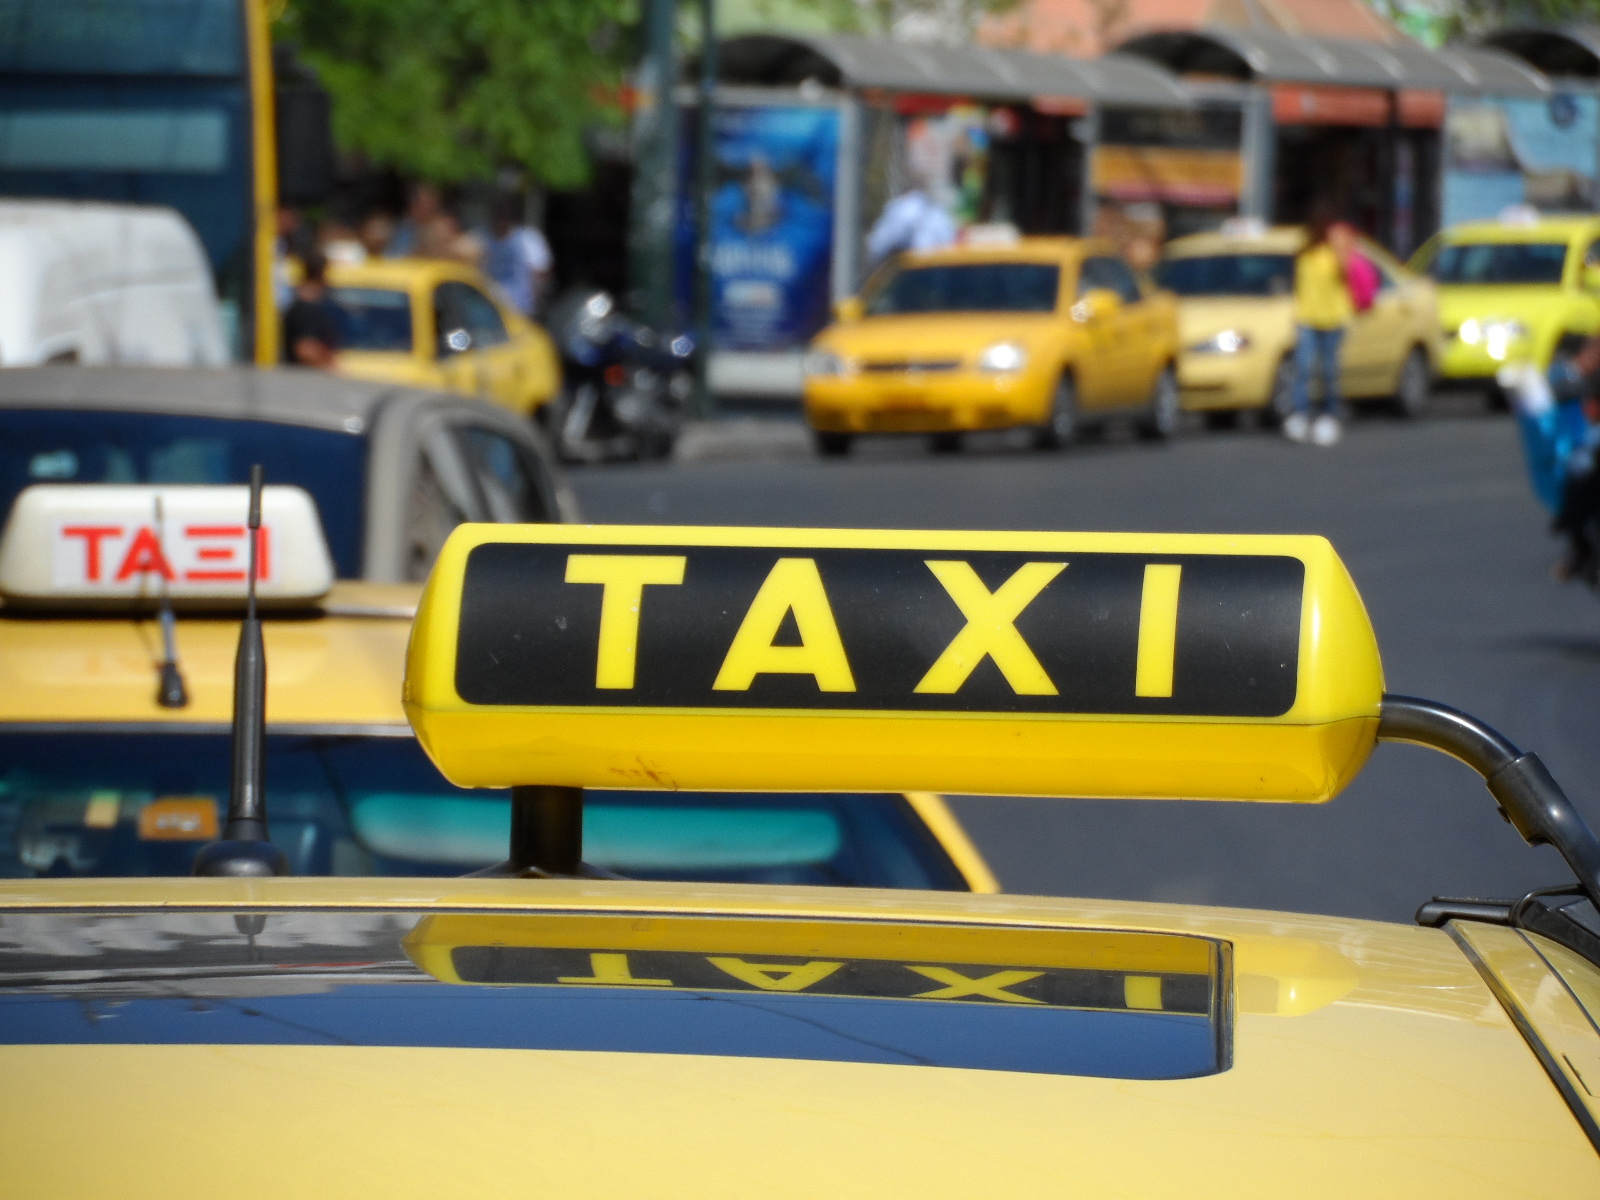 11 οδηγοί ταξί με χειροπέδες – Είχαν “πειραγμένα” ταξίμετρα – Σε ποιές περιοχές δρούσαν